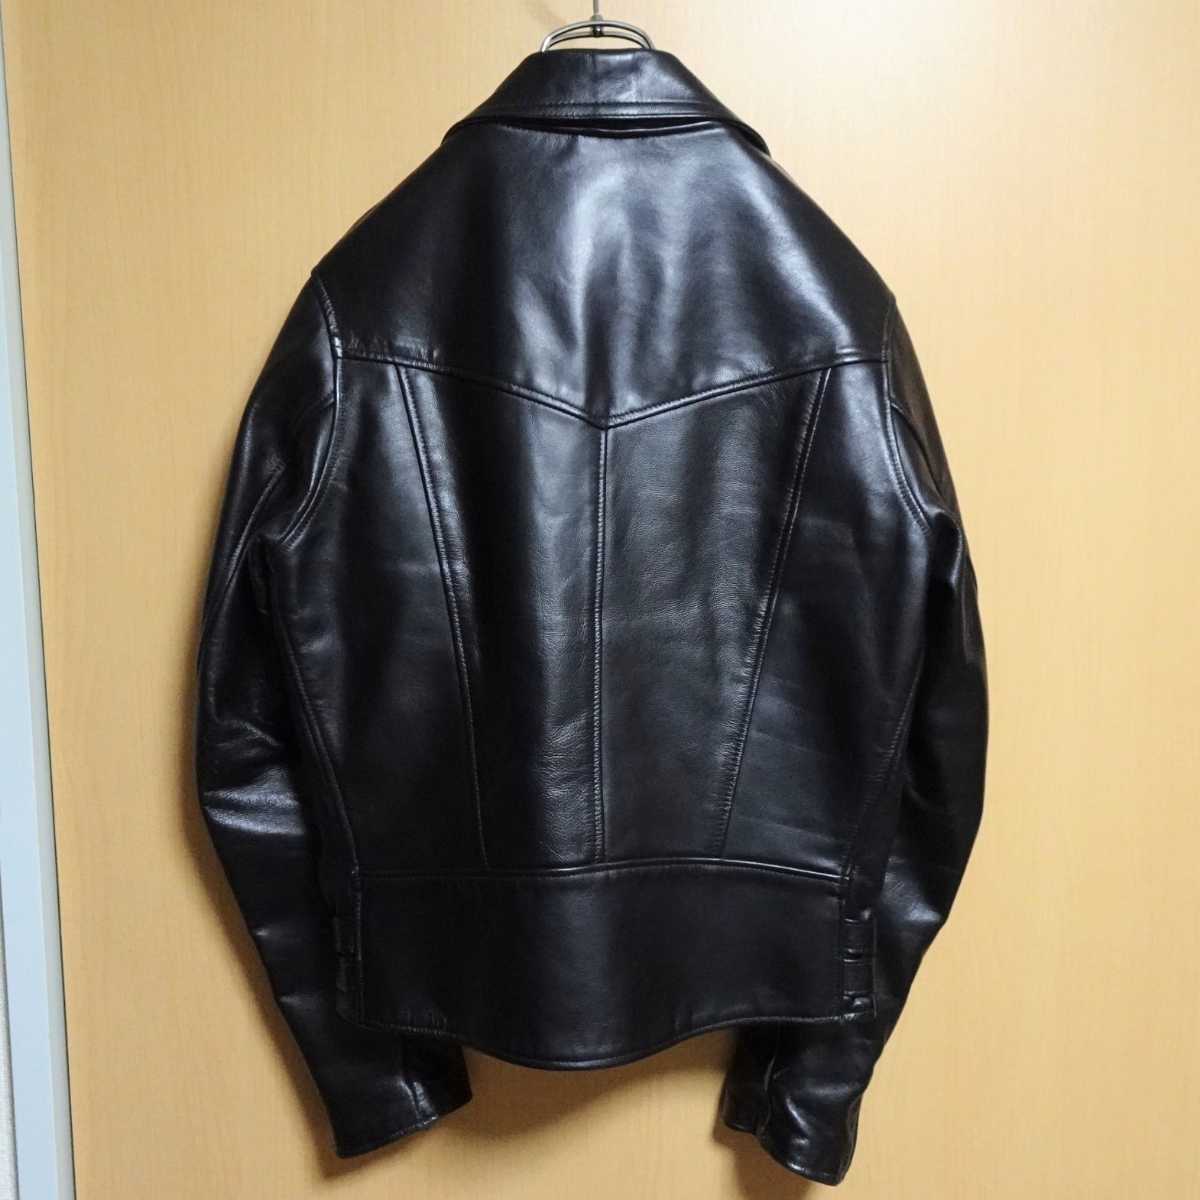 666 Leather Wear ダブルライダースジャケット ブラック 黒 34